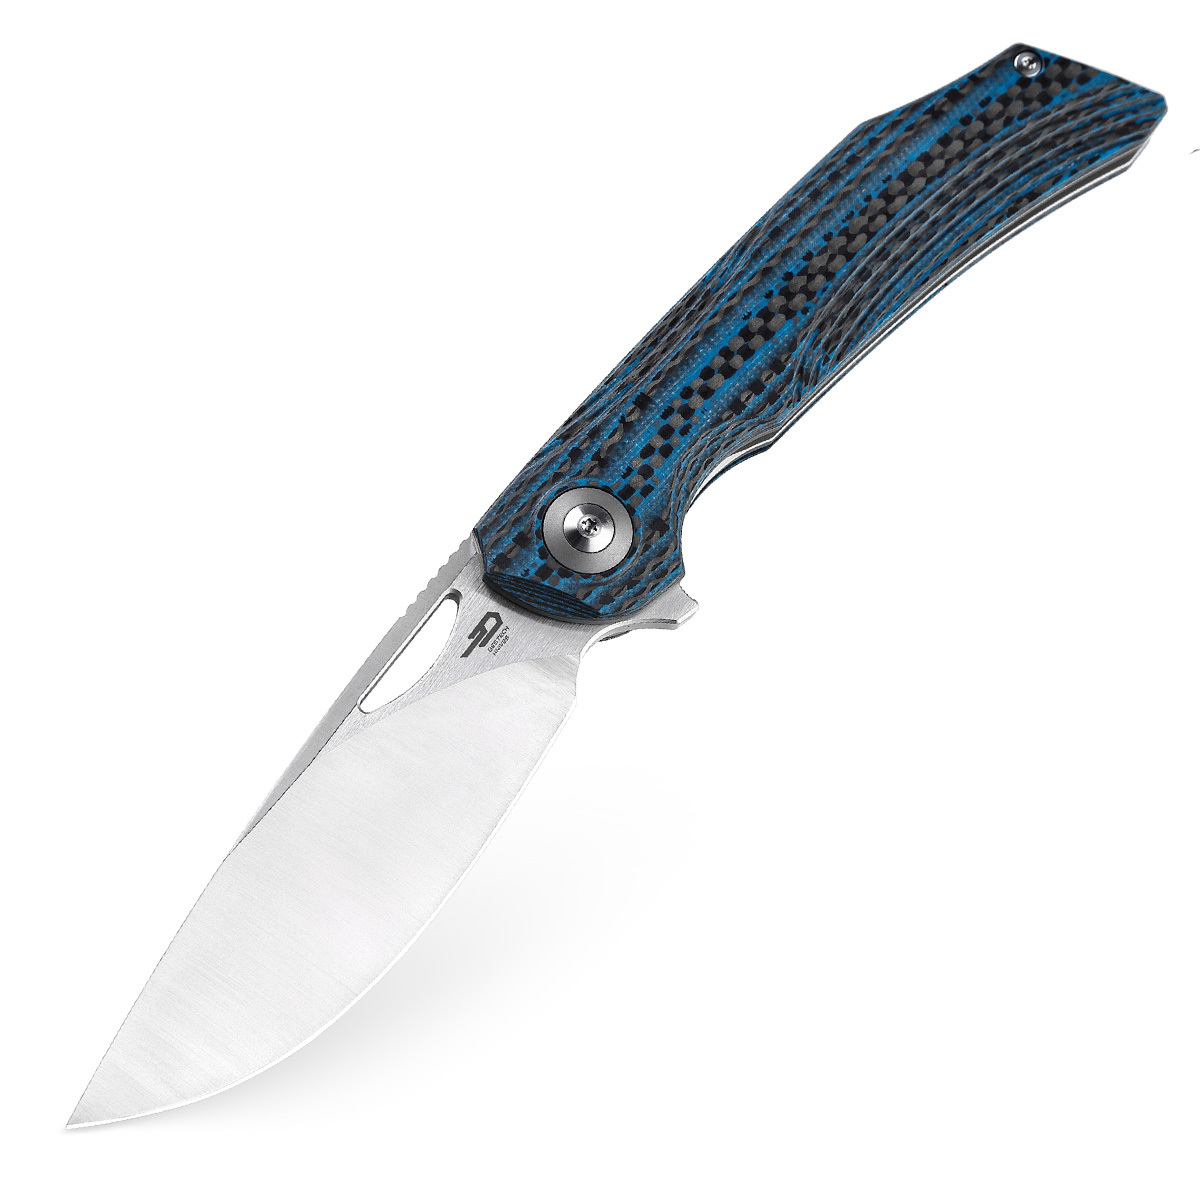 Складной нож Bestech Falko, сталь 154CM, рукоять G10/Carbon fiber, синий